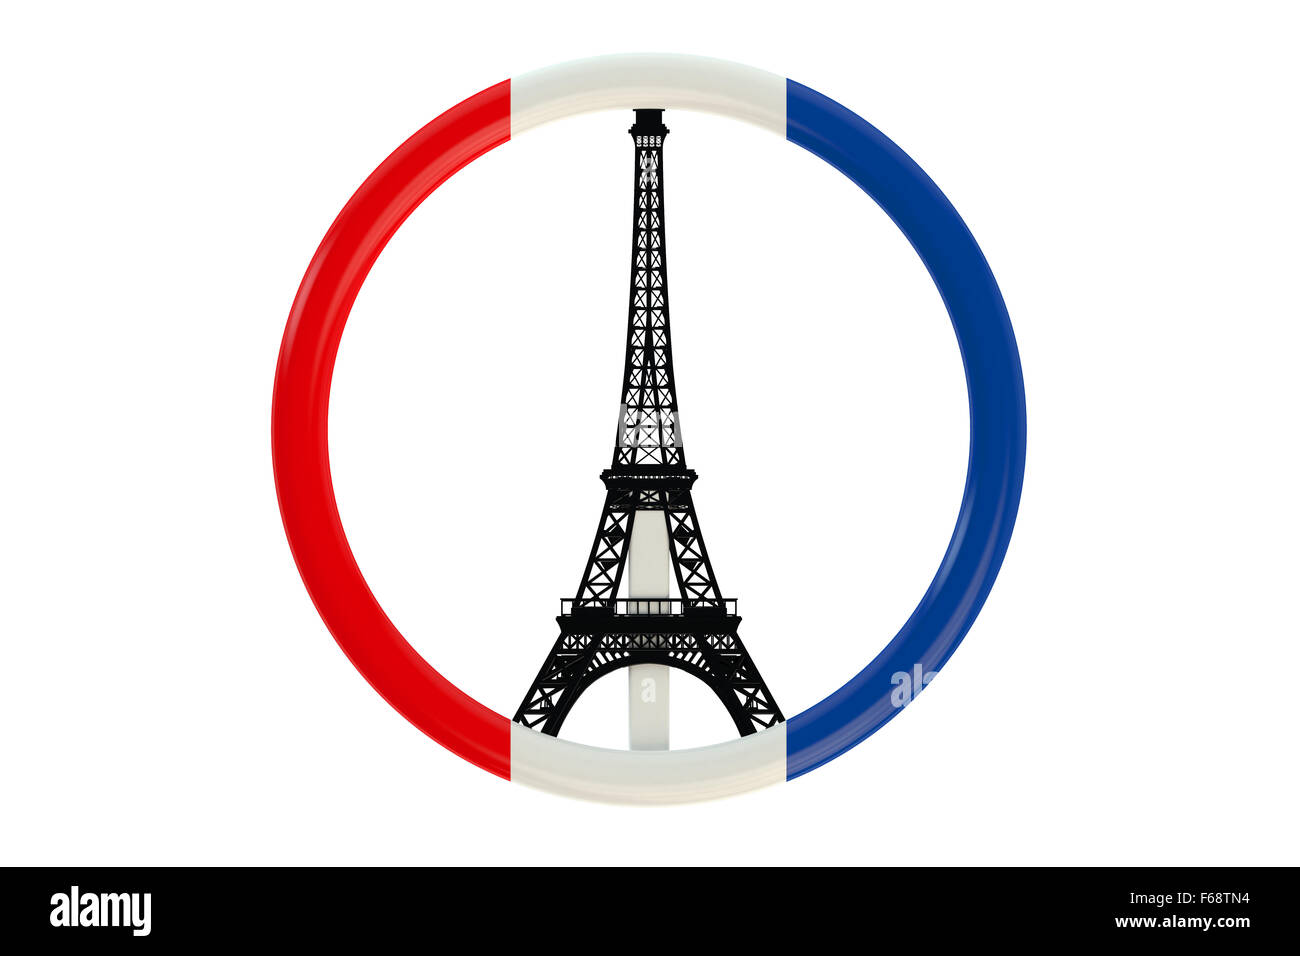 Attaques de terreur Paris concept avec drapeau symbole isolé sur fond blanc Banque D'Images